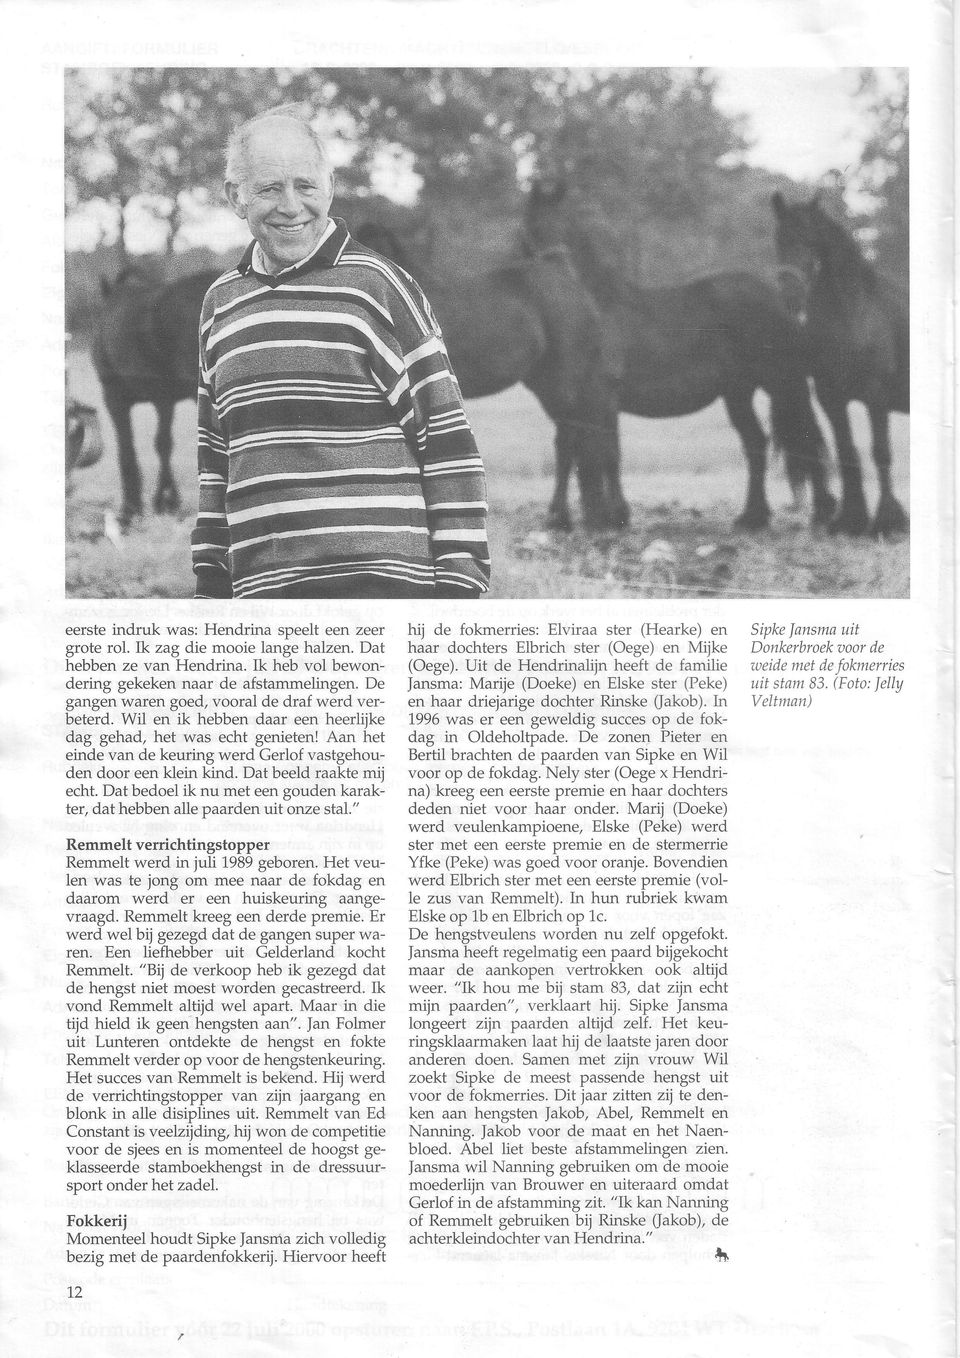 Dat beeld raakte mij echt. Dat bedoel ik nu met een gouden karakter, dat hebben alle paarden uit onze stal." Remmelt verrichtingstopper Remmelt werd in juli1989 geboren.